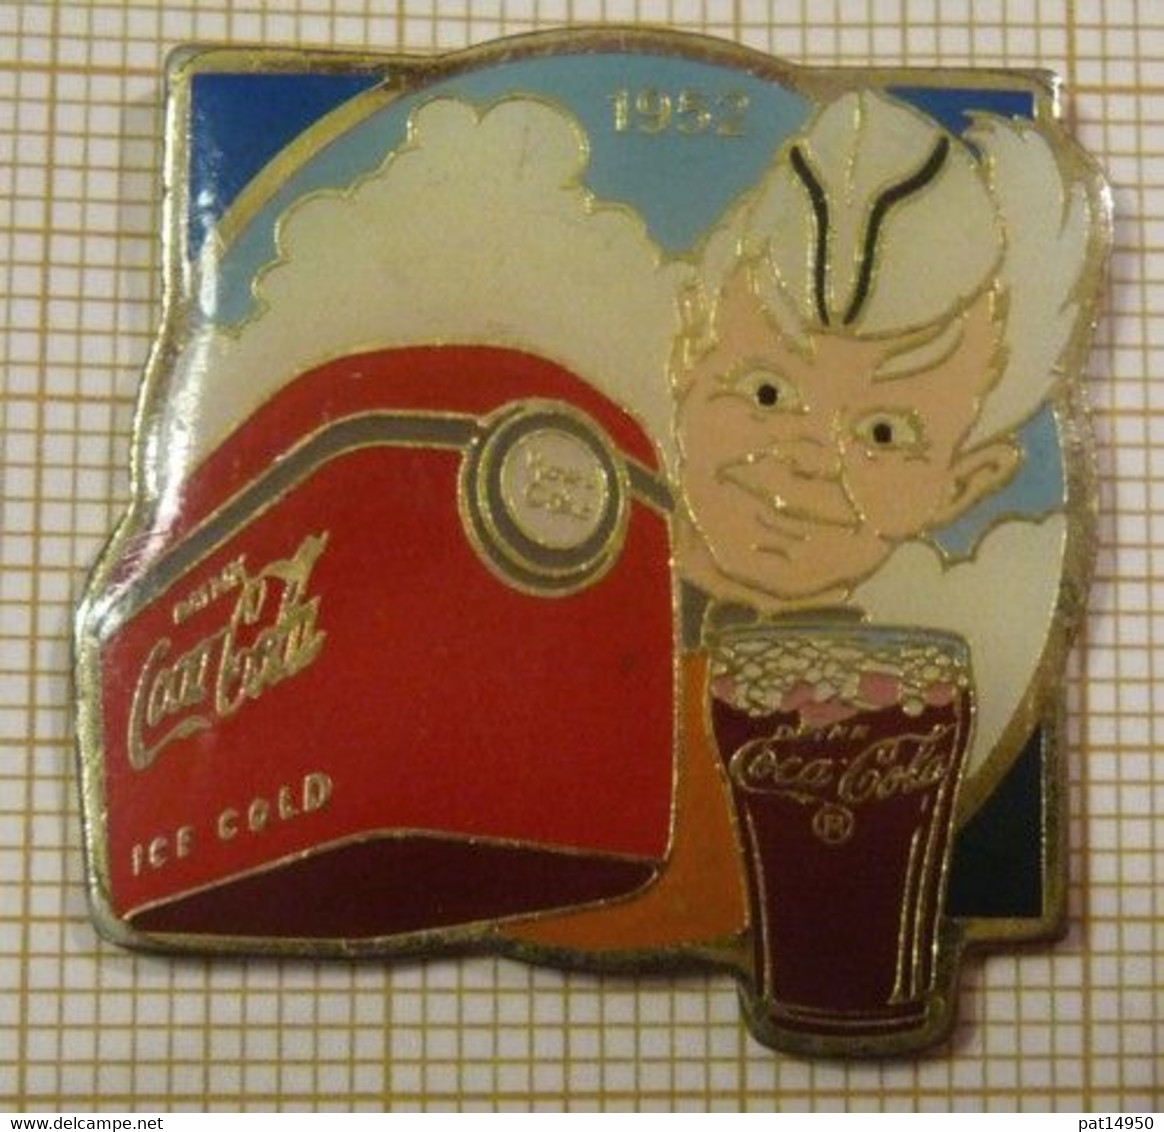 COCA COLA 1952 ICE COLD - Coca-Cola